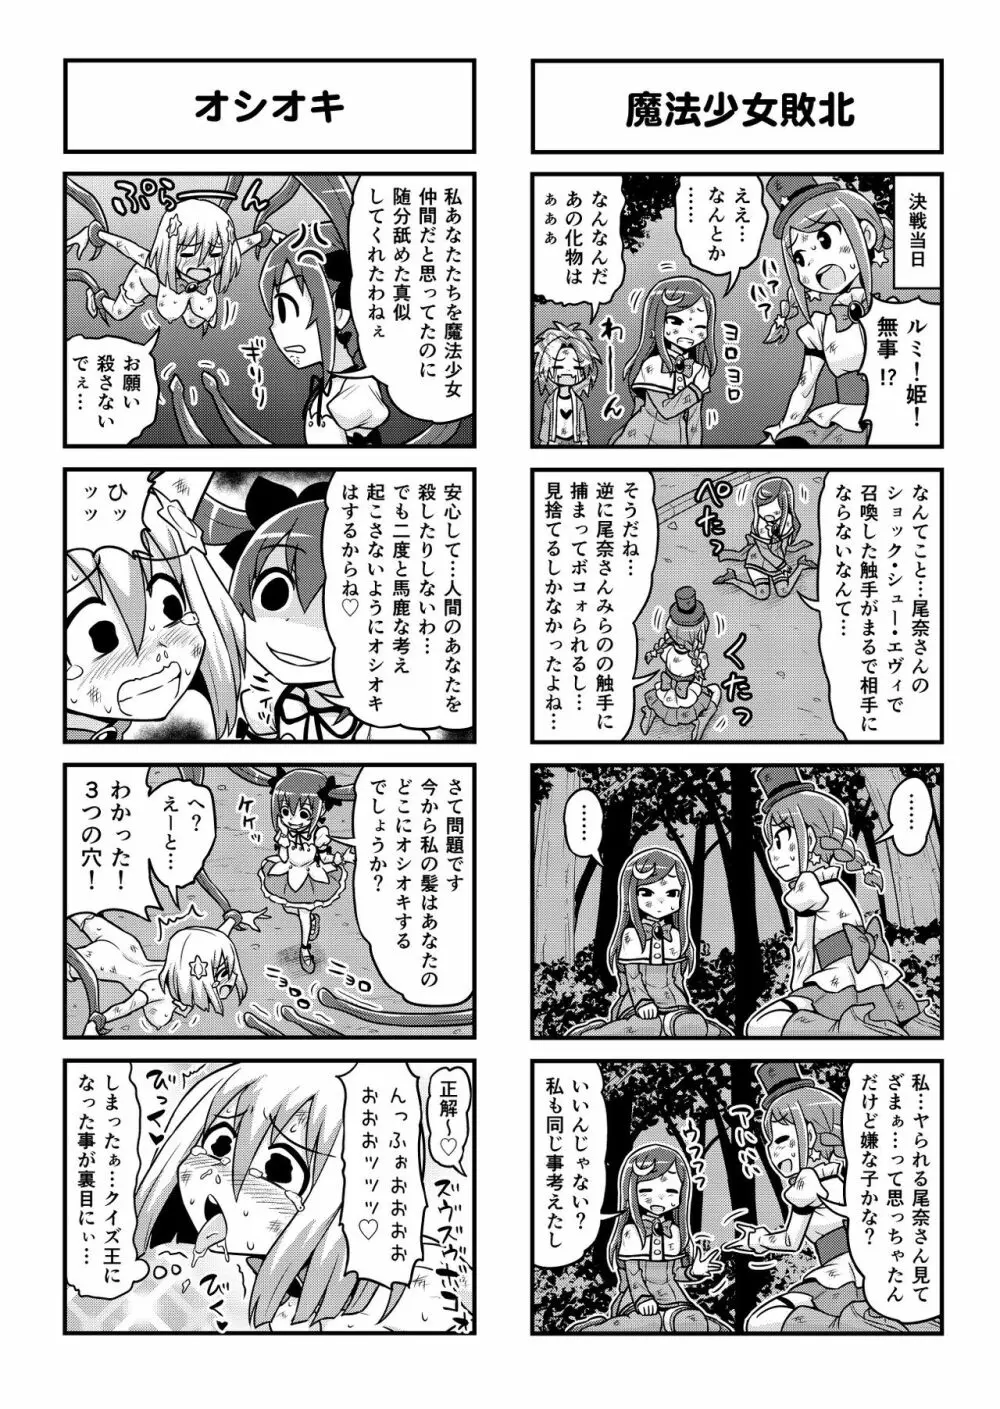 のんきBOY 1-48 - page395